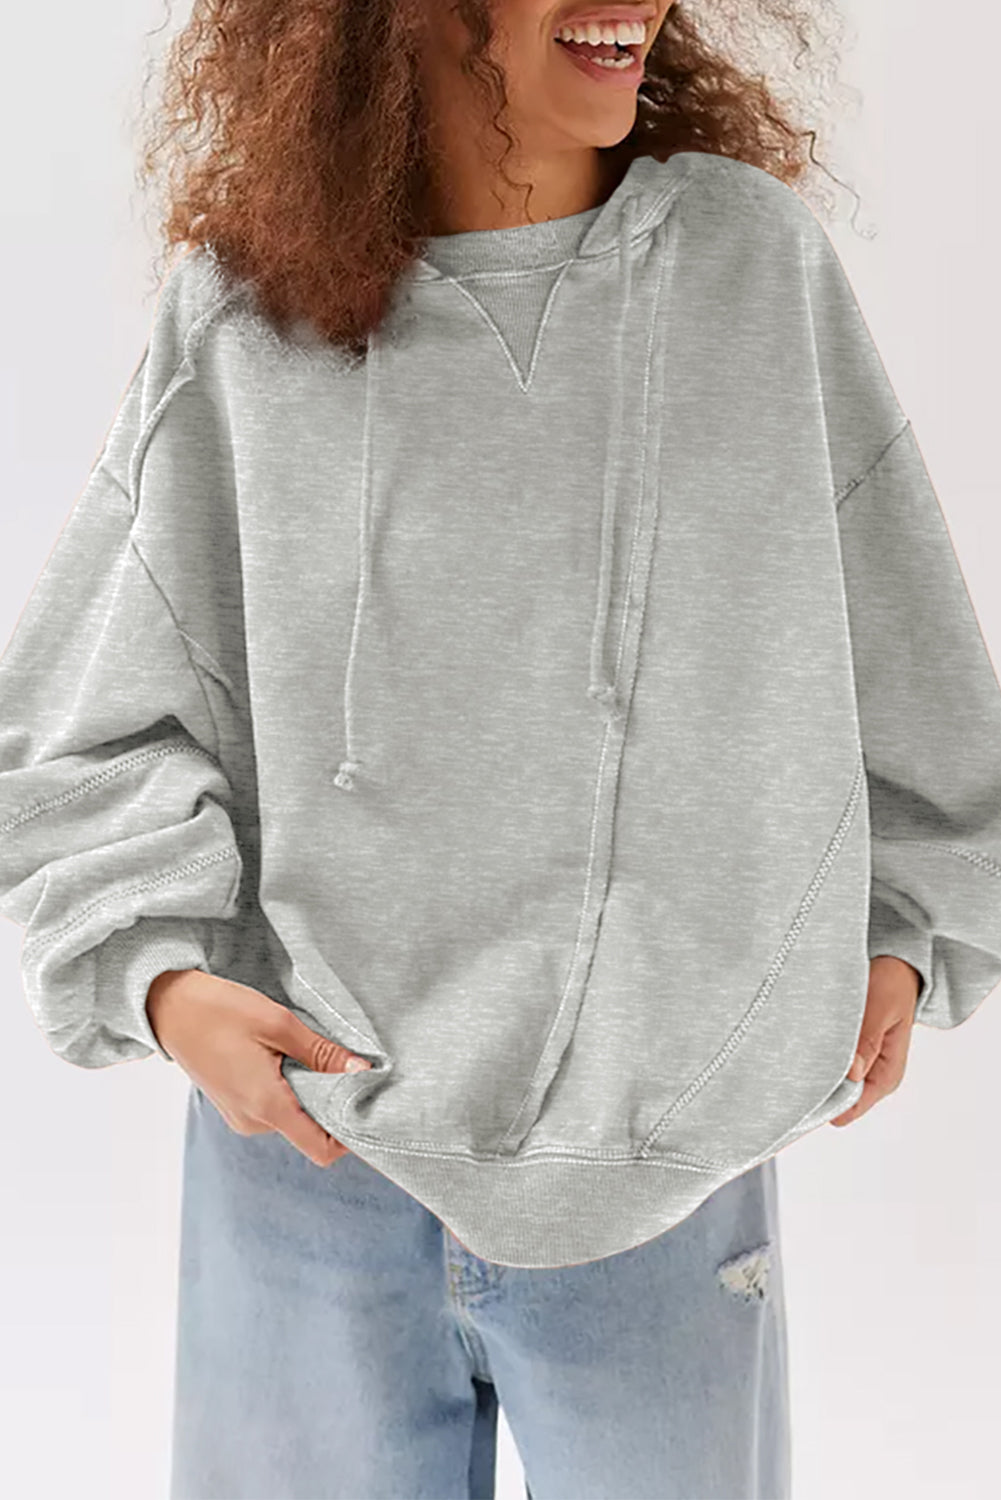 Siv topel zimski pulover s kapuco z aktivnimi detajli